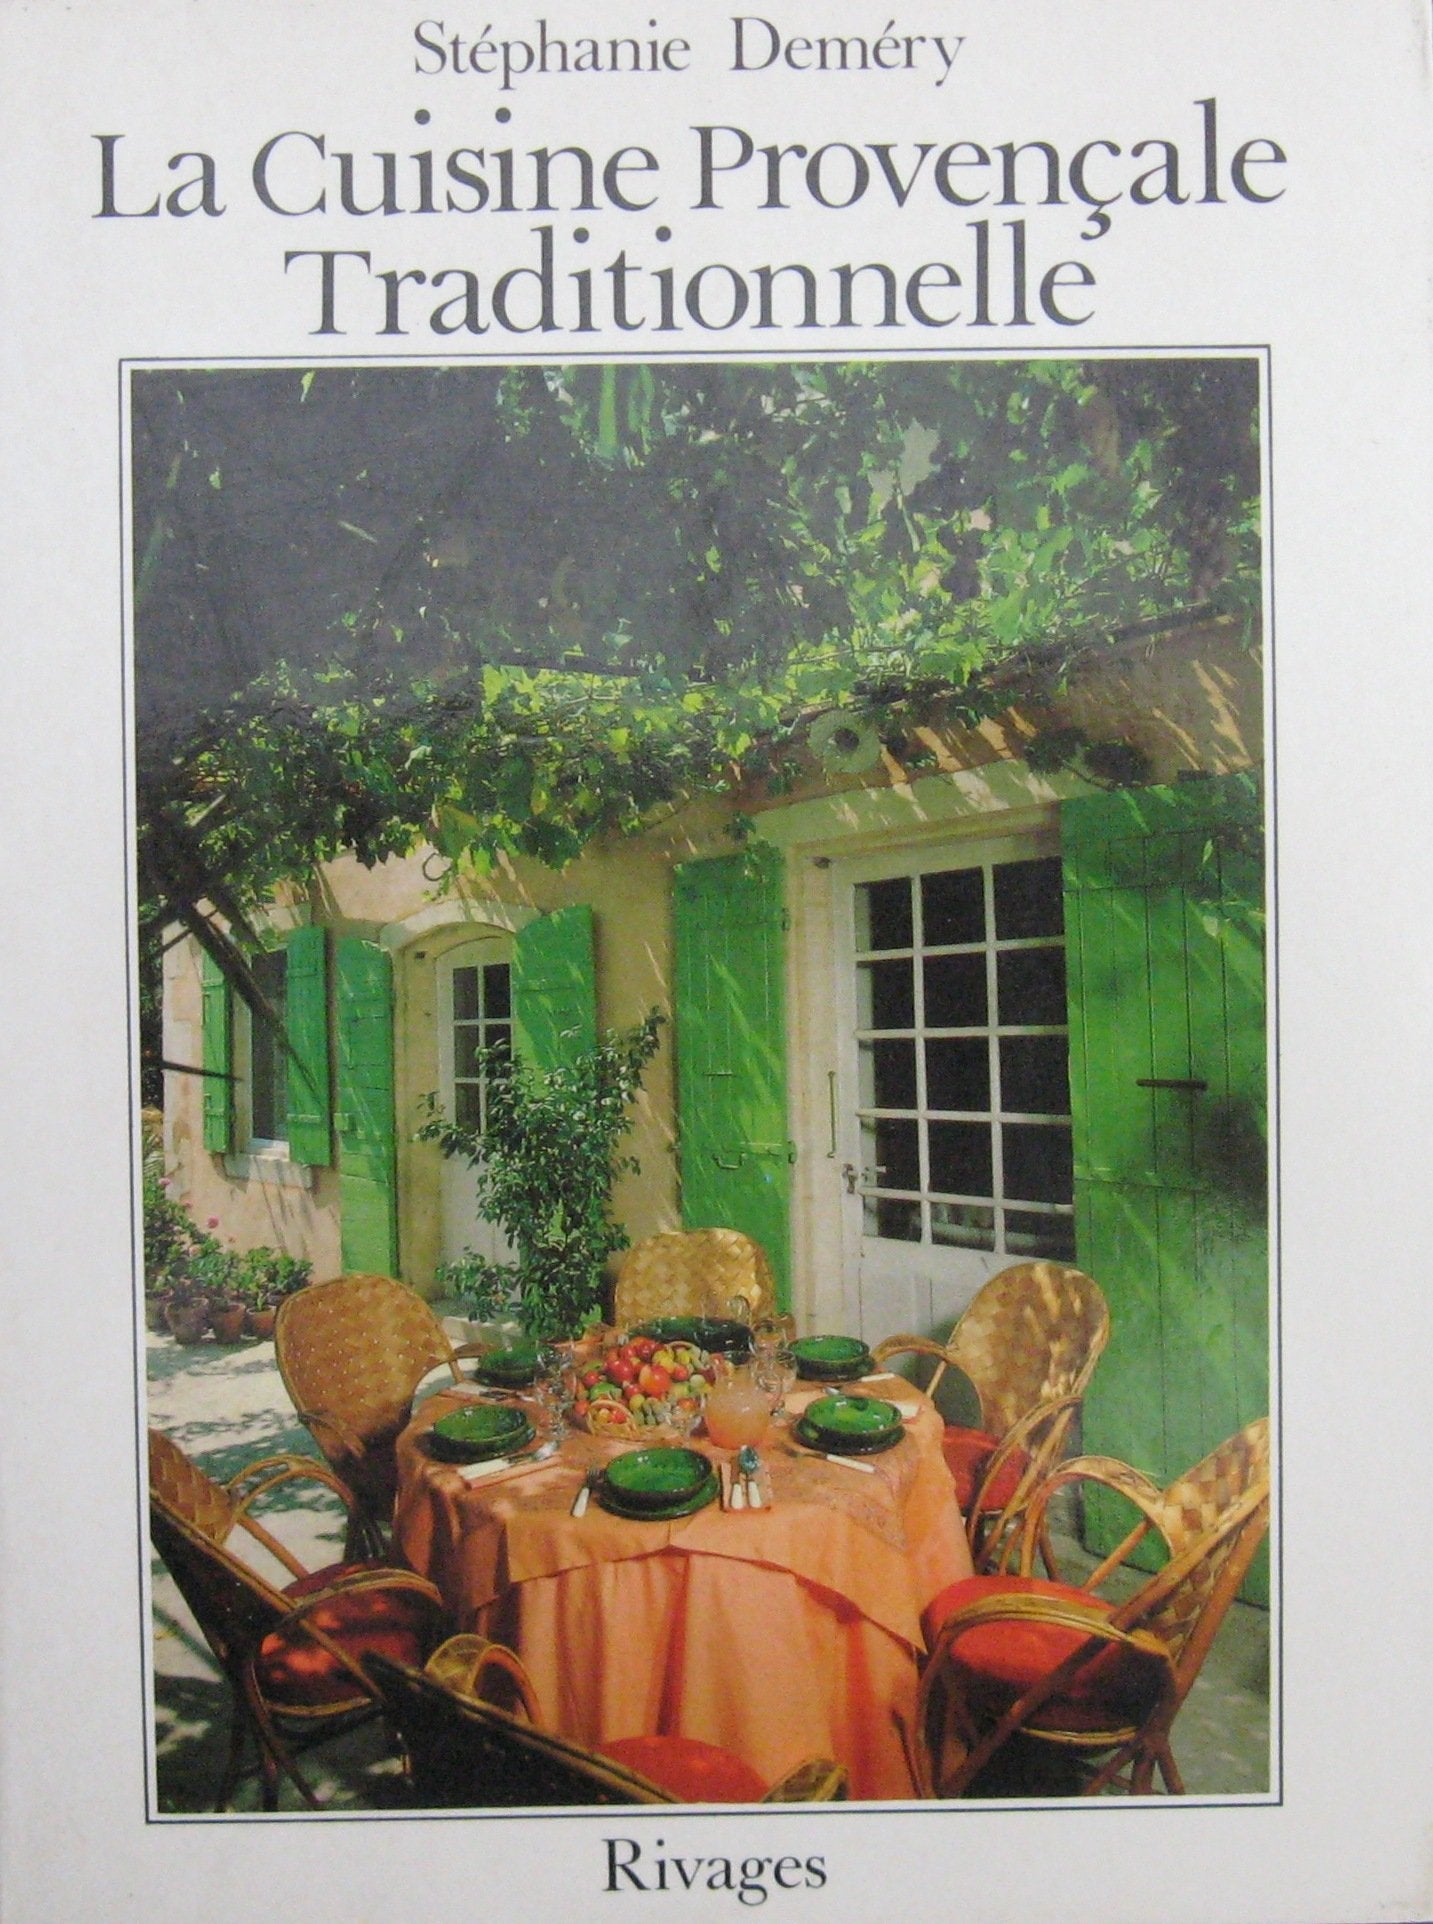 Livre ISBN 2903059209 La cuisine provençale traditionnelle (Stéphanie Deméry)